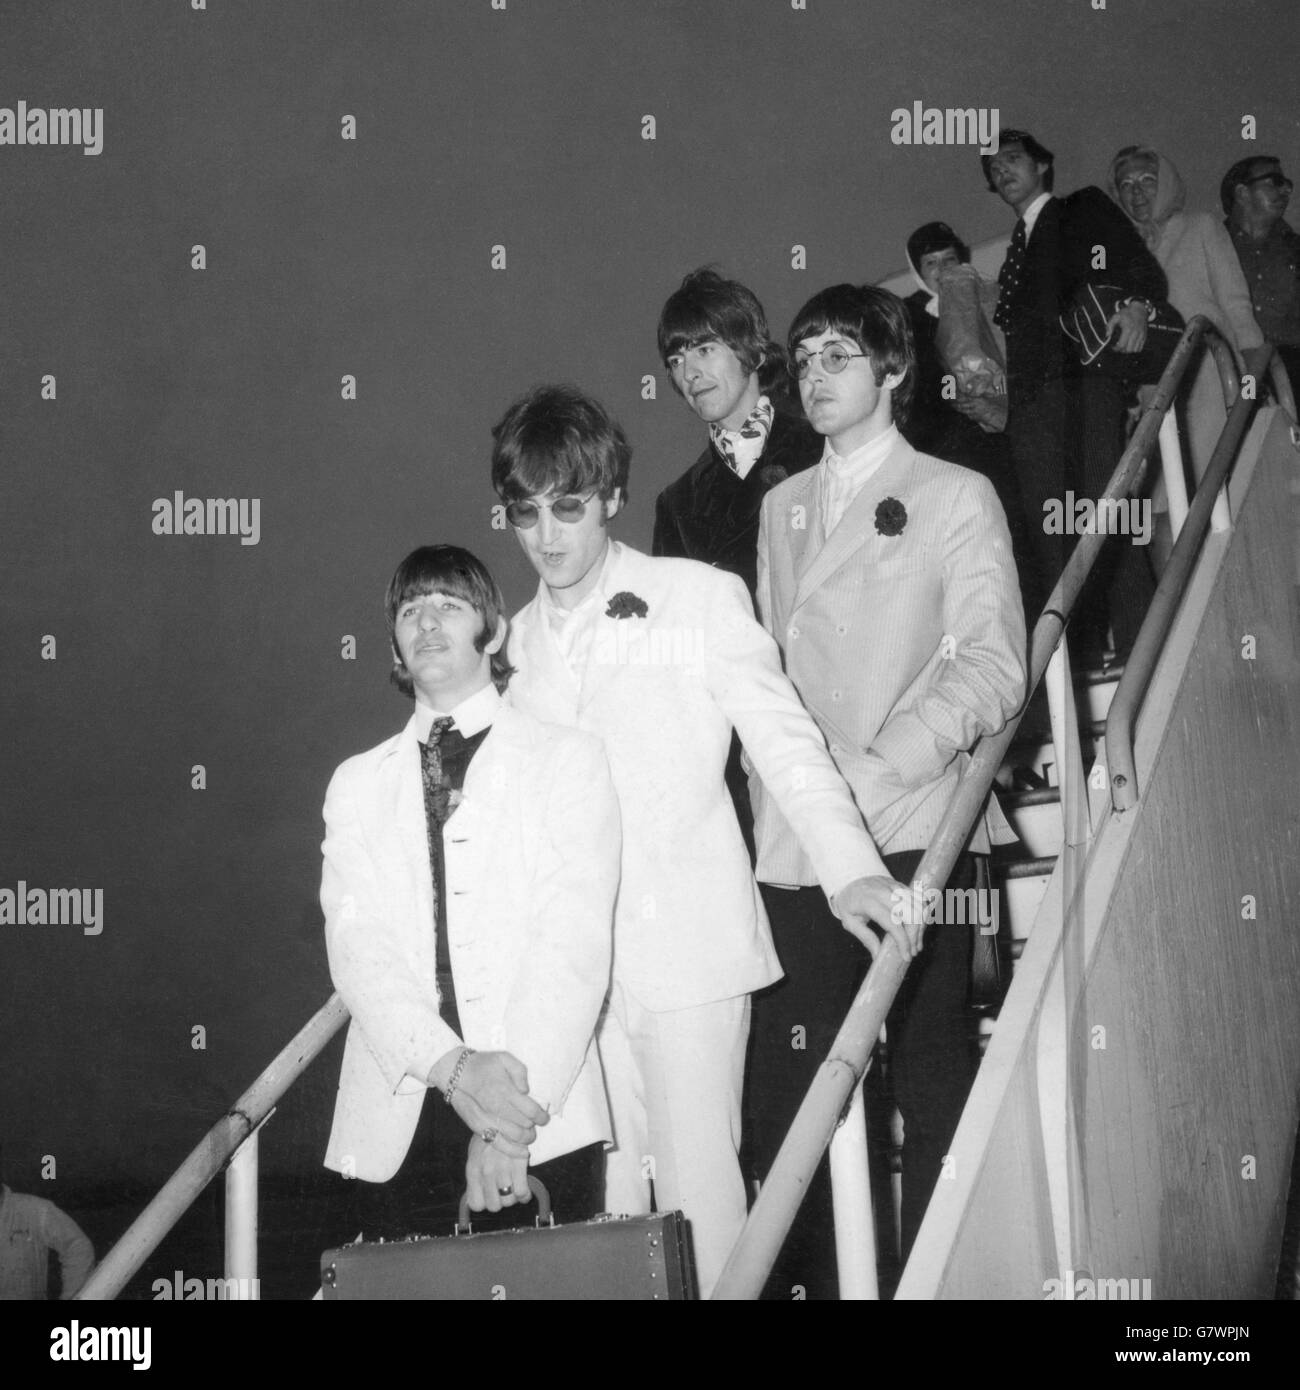 Die Beatles stellten sich vor, als sie heute (Mittwoch) von ihrer amerikanischen Tour am Flughafen London aus ihrem Flugzeug kamen. (Von links nach rechts) Ringo Starr in weißer Jacke und schwarzer Hose, JOHN LENNON in weißem Anzug und Sonnenbrille, GEORGE HARRISON in einem schwarzen Samtanzug und PAUL McCartney, der einzige Beatles-Junggeselle, der bestritt, dass er heiraten wollte. Trotz der frühen Stunde waren etwa 250 schreiende Mädchen-Fans auf dem Balkon des Queen's Building, um die Beatles von ihrer Drama-Tour zu begrüßen. Stockfoto